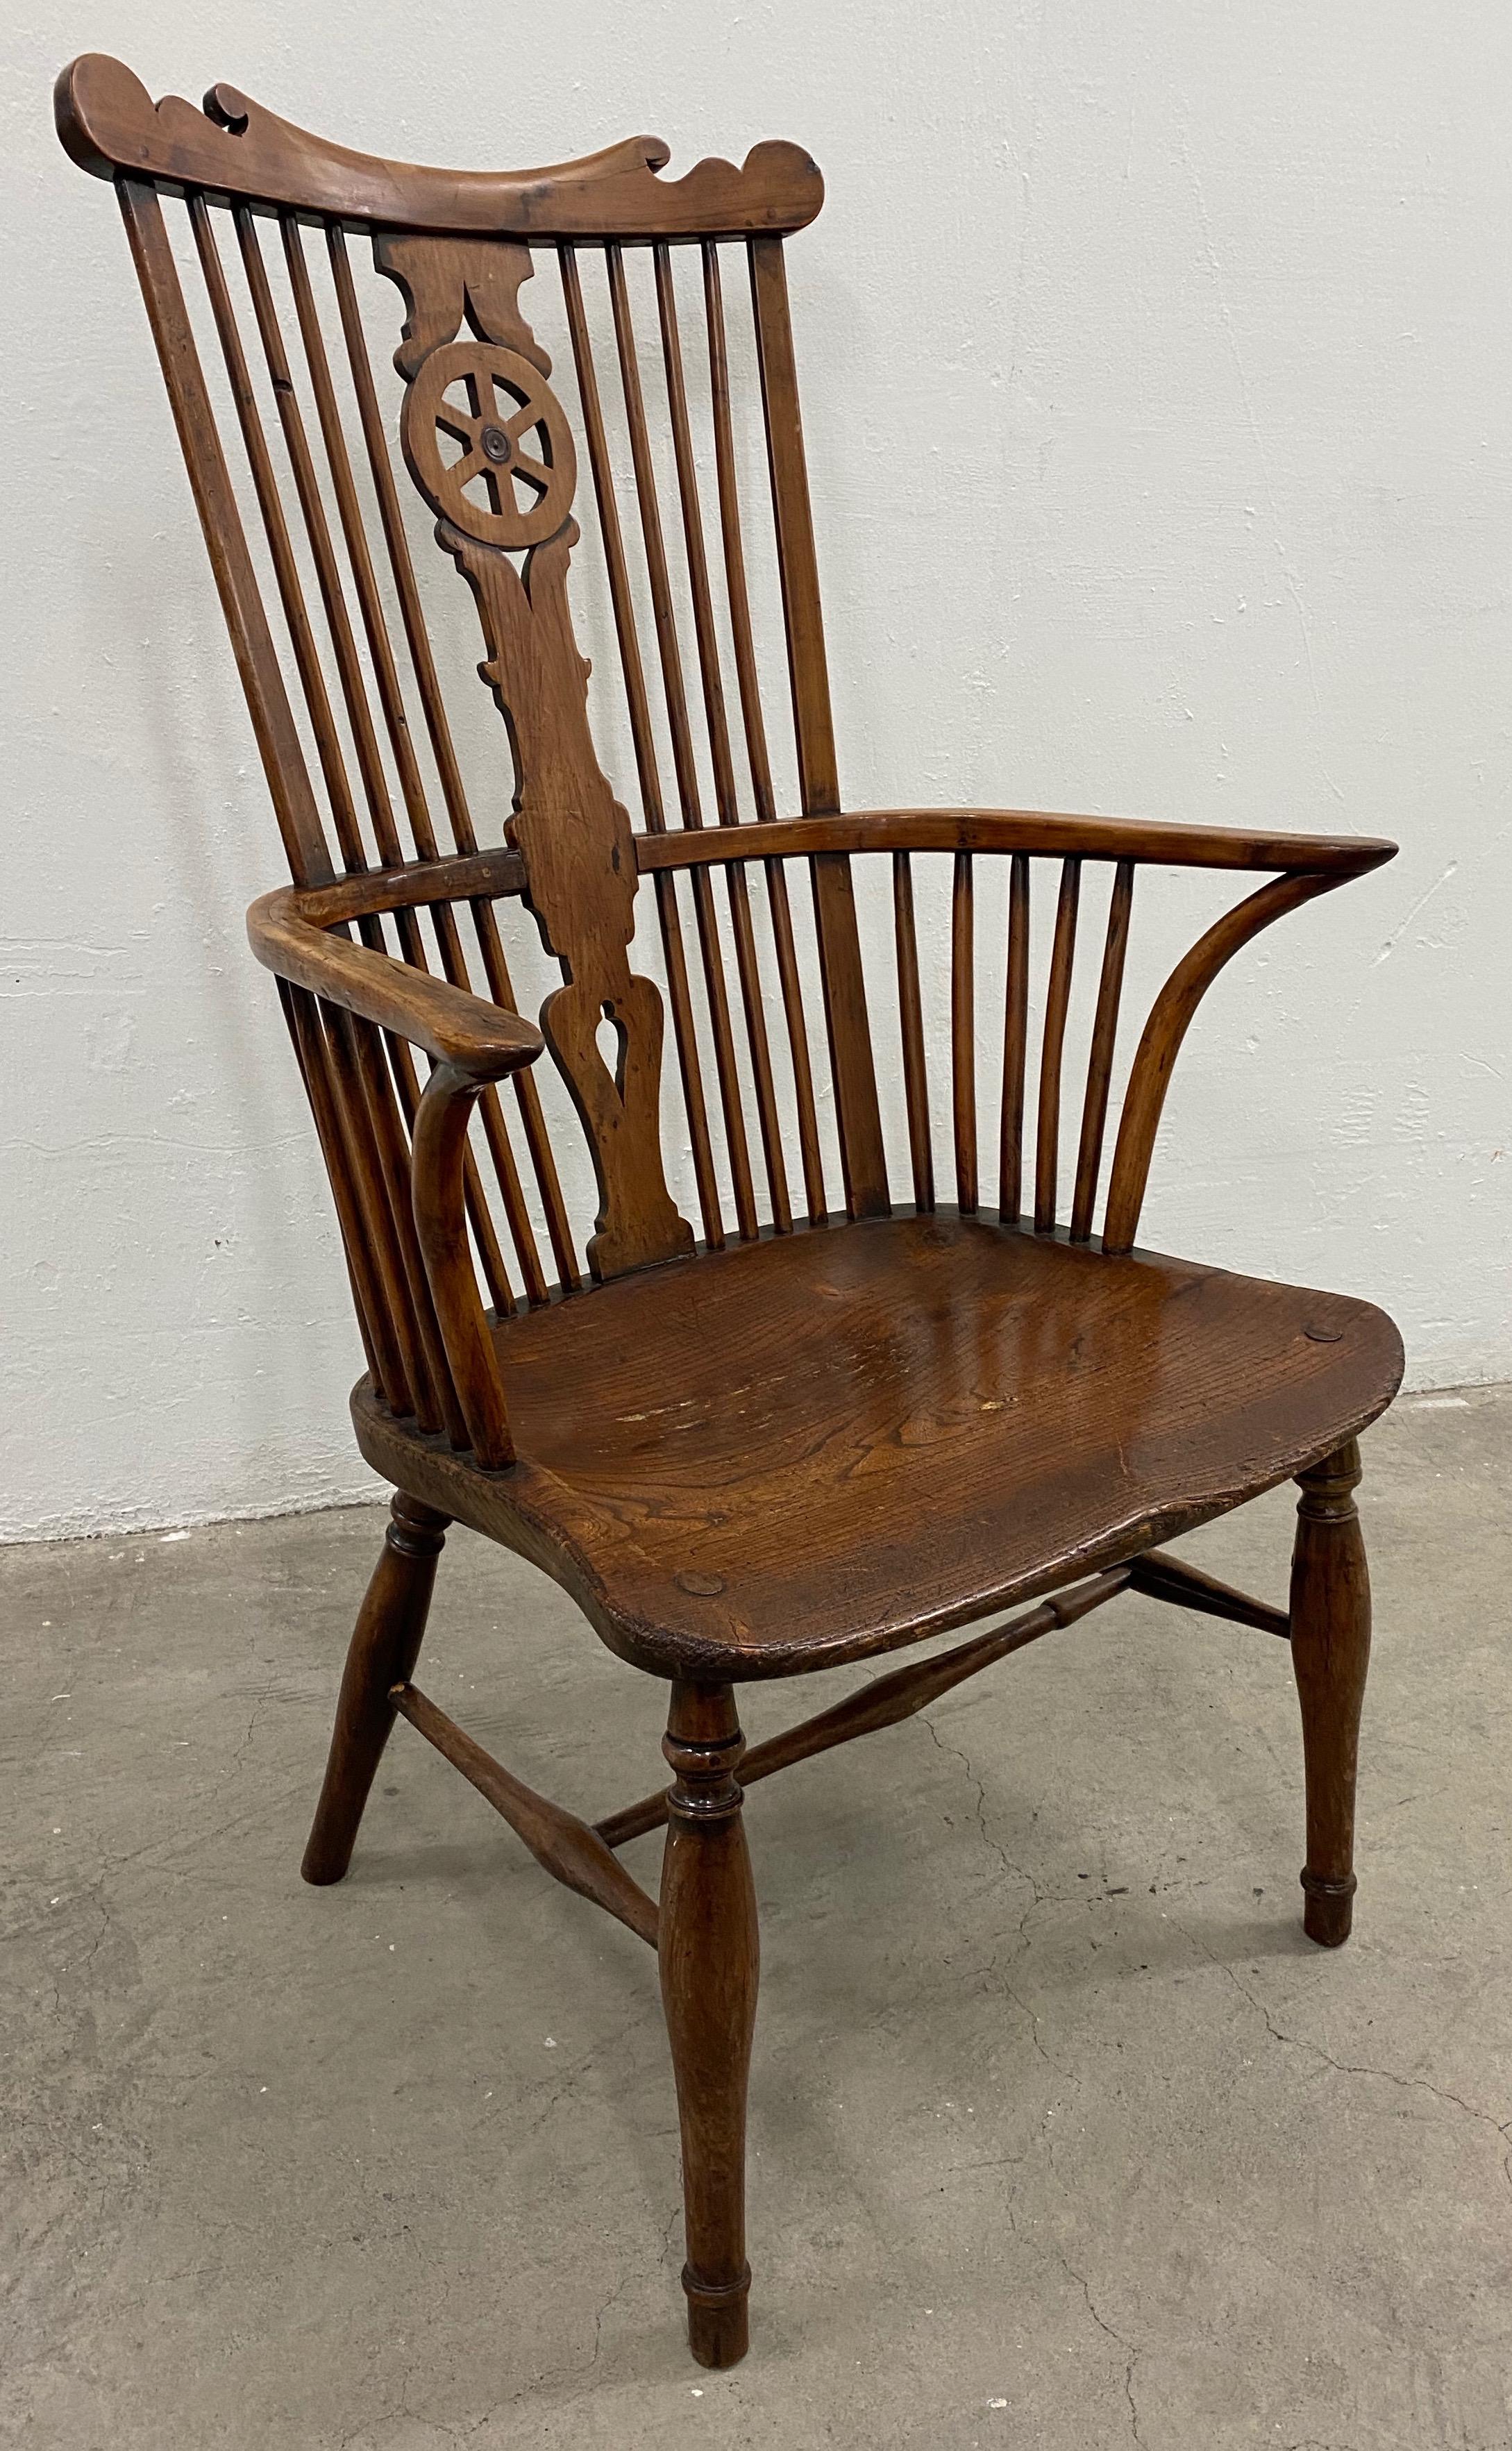 Fauteuil Windsor à haut dossier en bois d'if du 19e siècle

Fauteuil Windsor à haut dossier, sculpté à la main et fabriqué sur mesure. La chaise est fabriquée en bois d'if européen (commun) massif.

Le fauteuil mesure 26,5